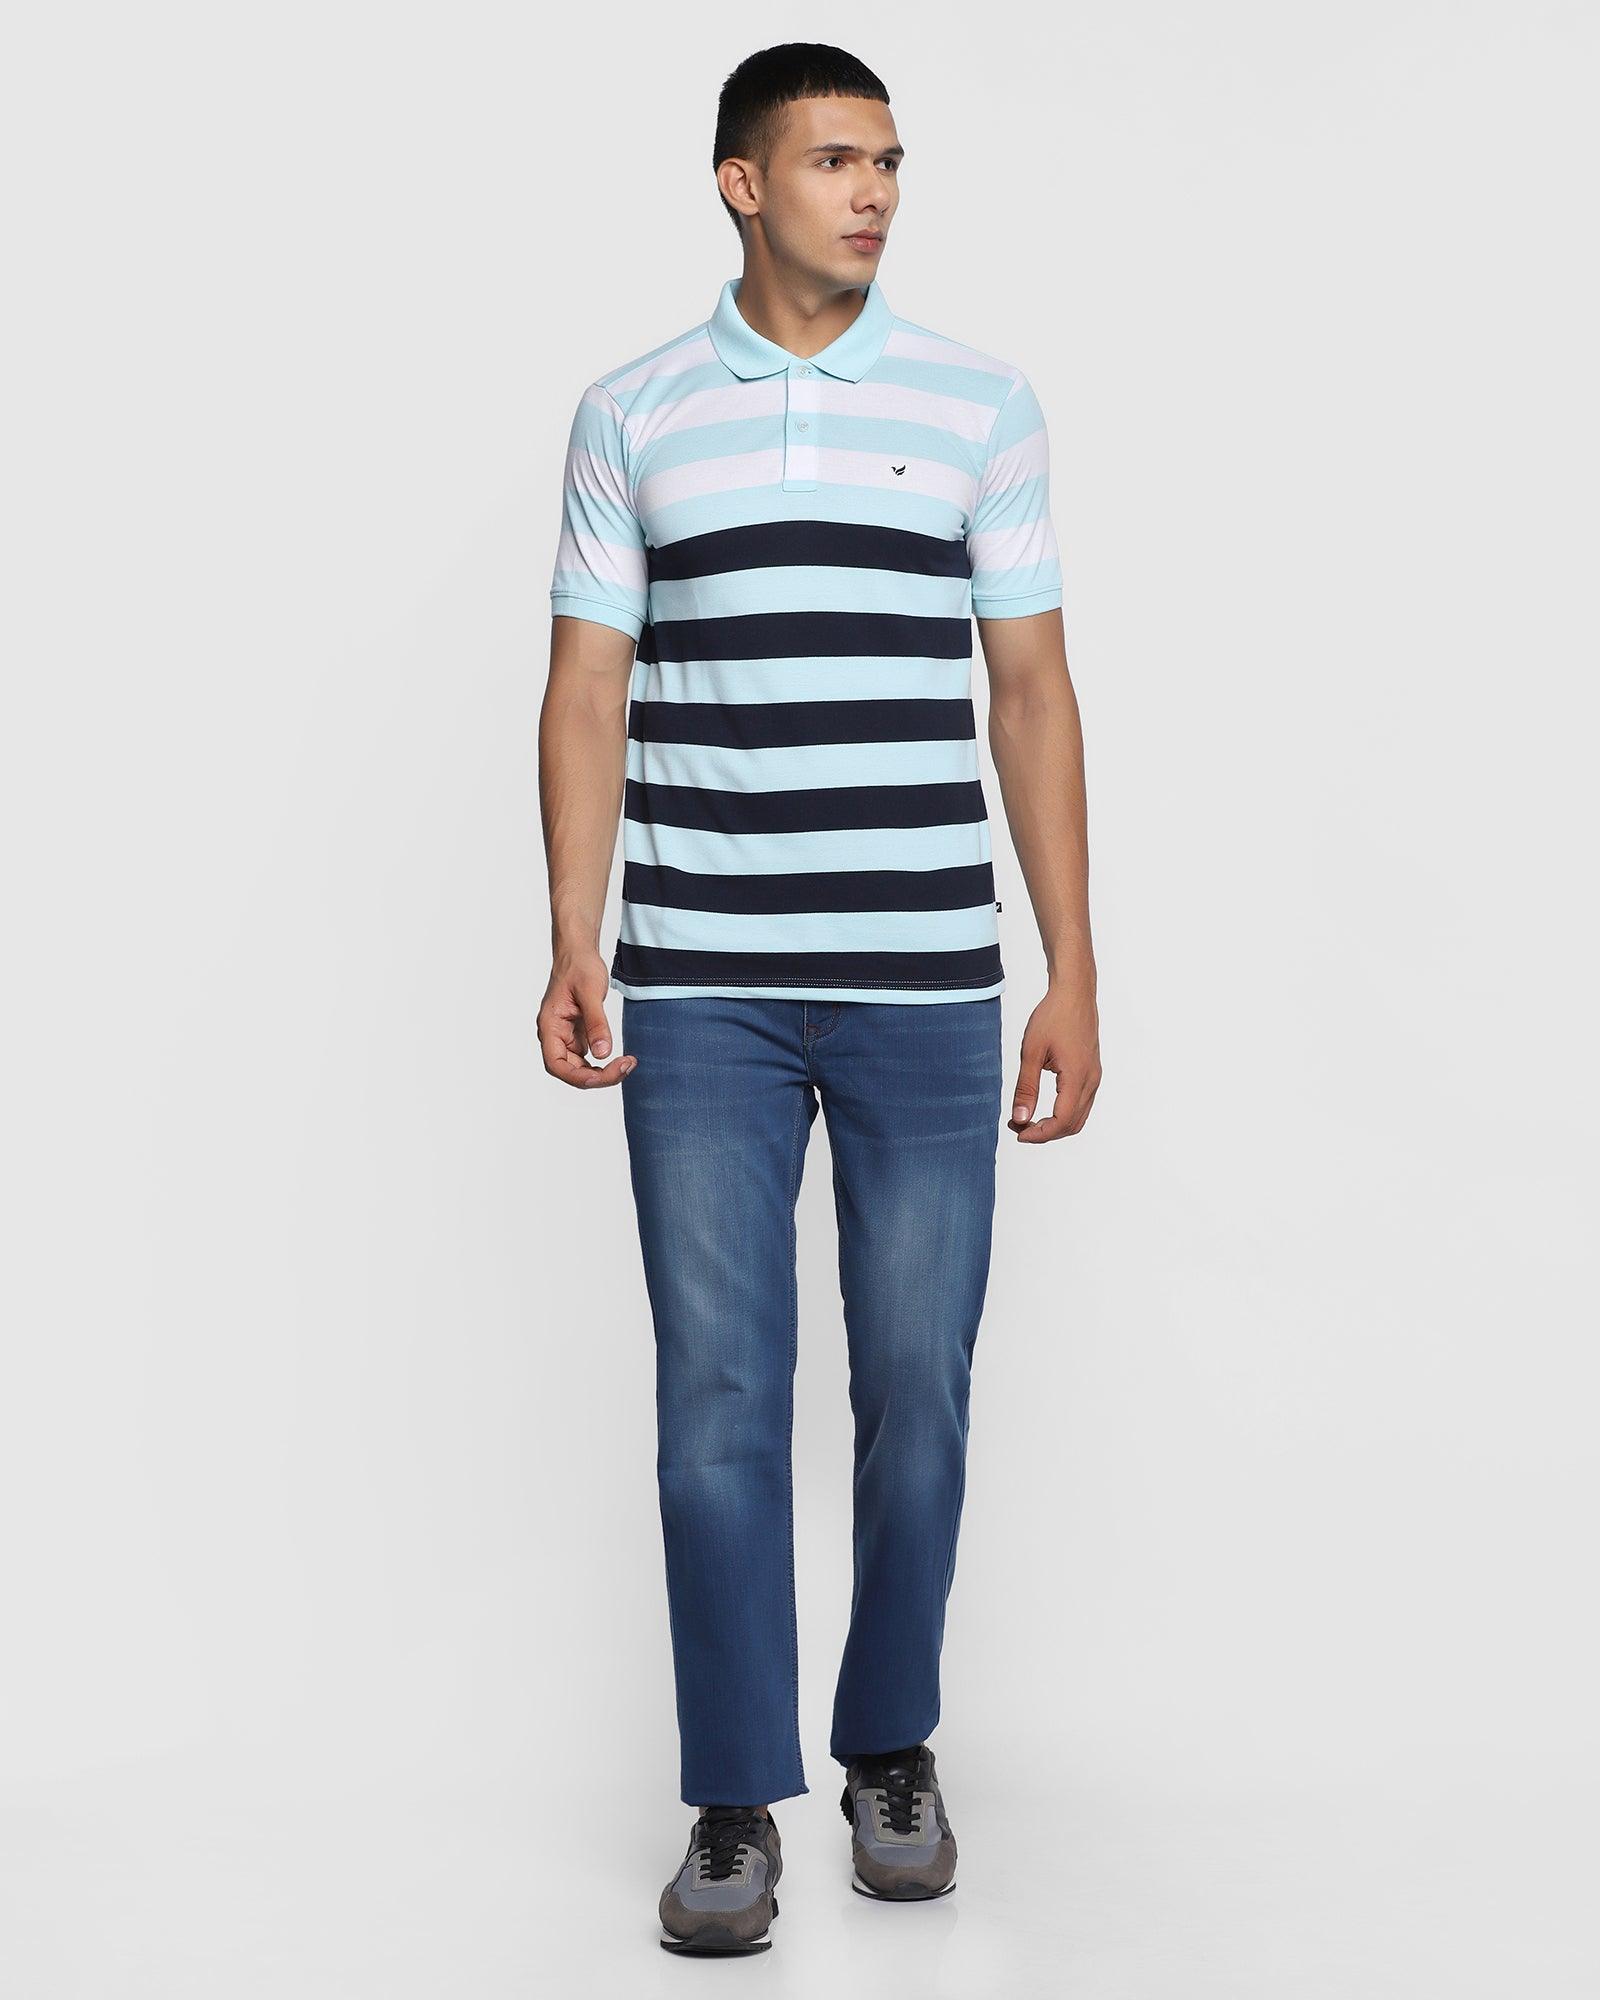 Polo Aqua Striped T Shirt - Plano